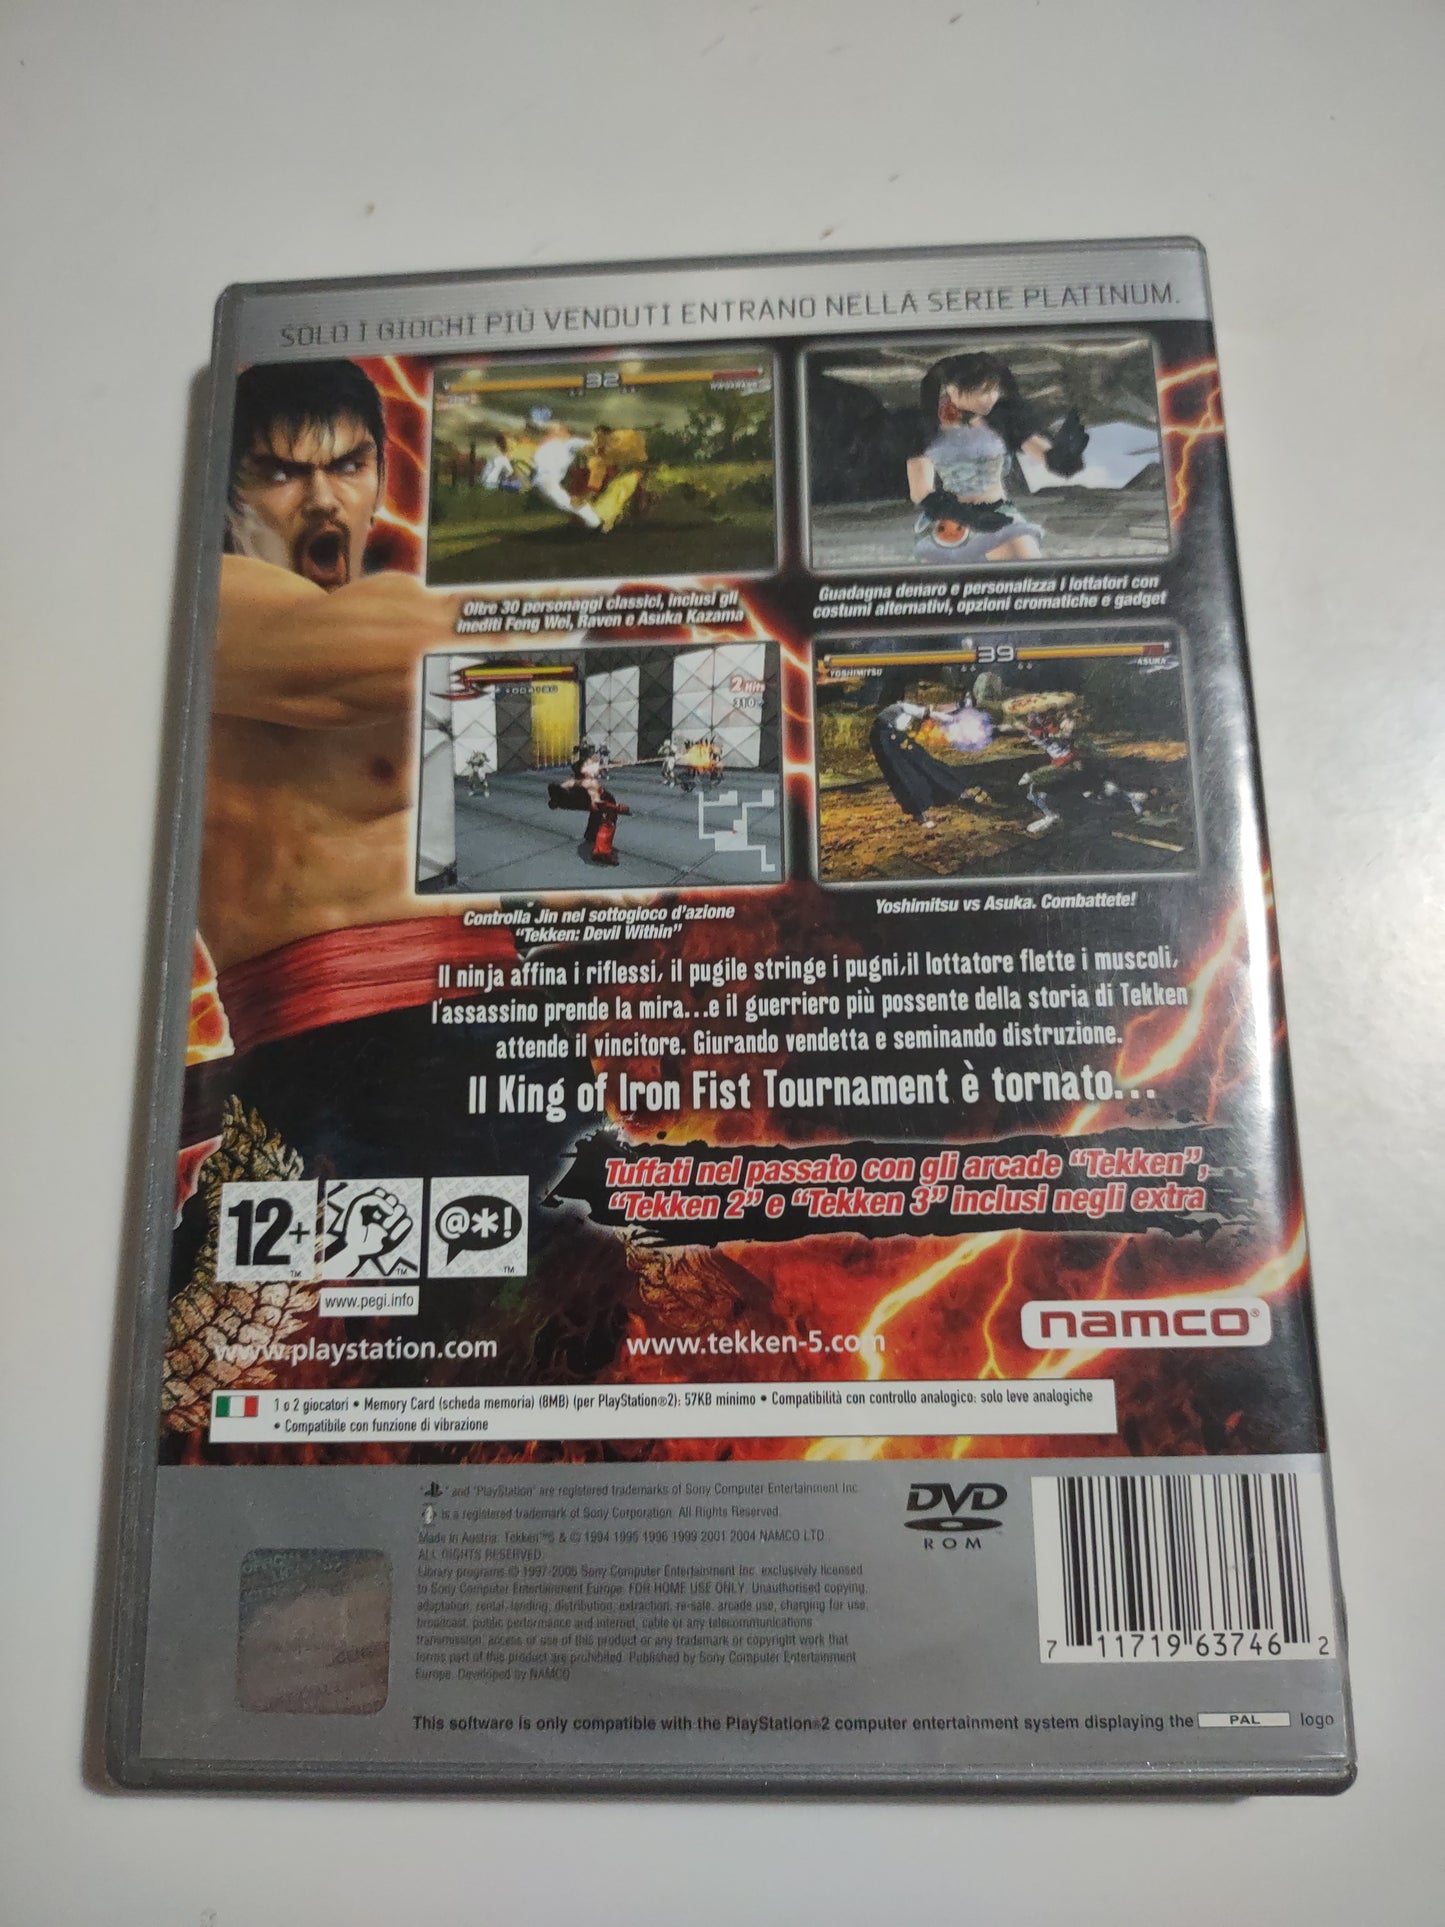 Gioco PlayStation 2 Ps2 Tekken 5 Platinum